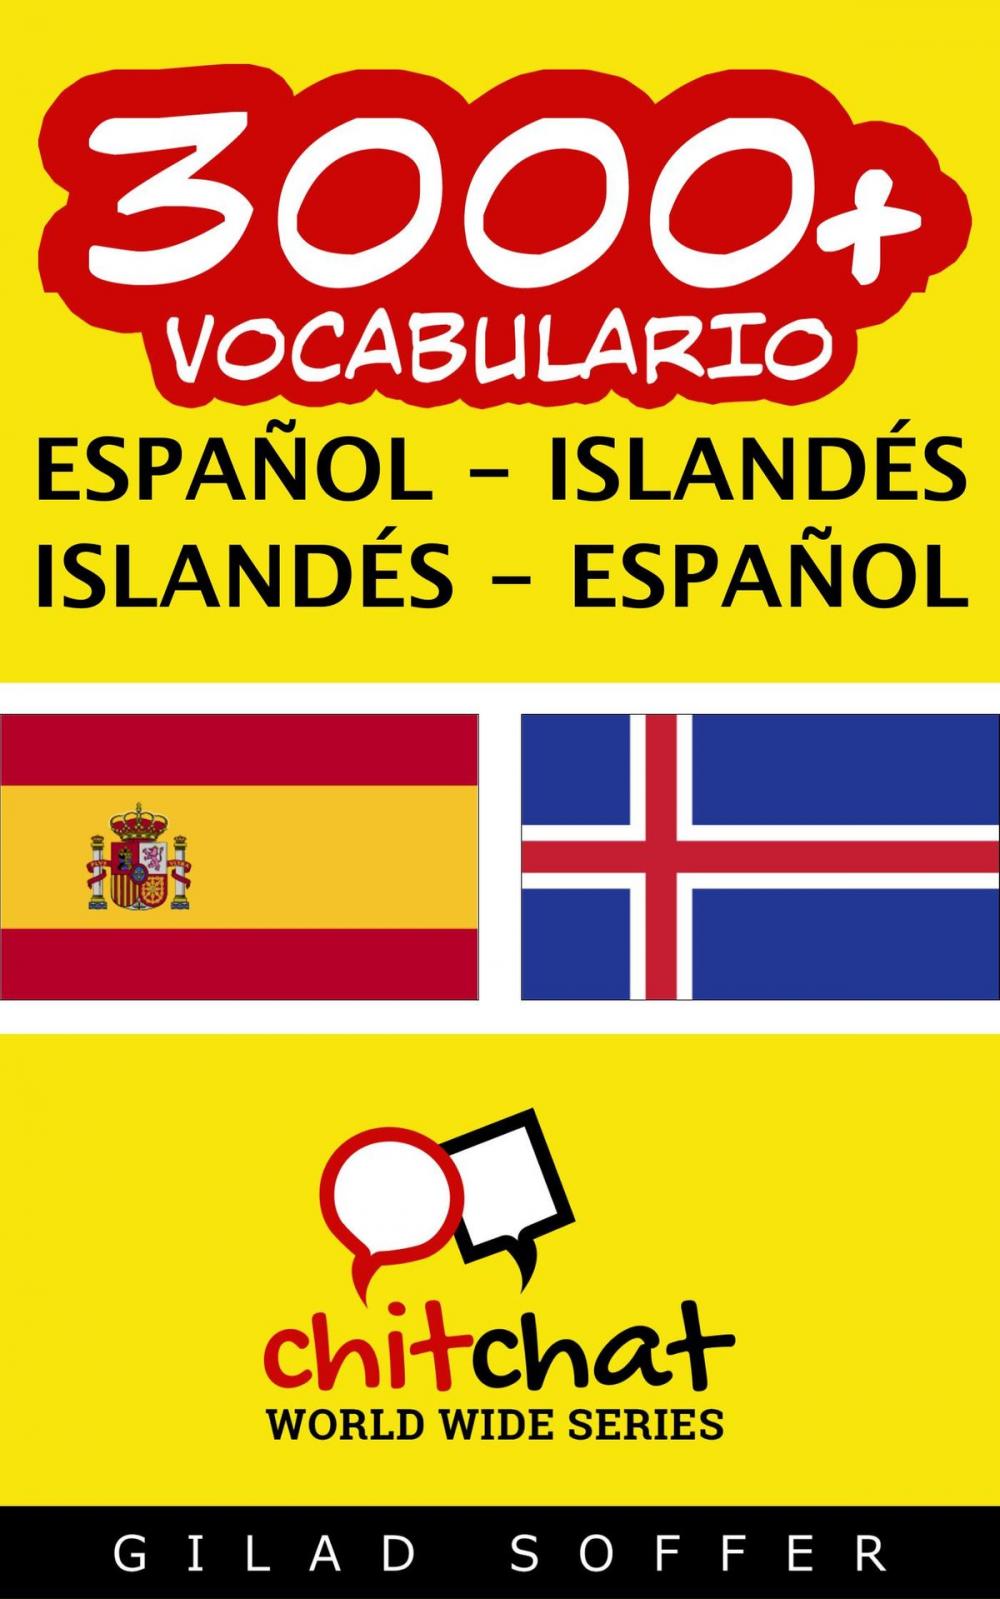 Big bigCover of 3000+ vocabulario español - islandés